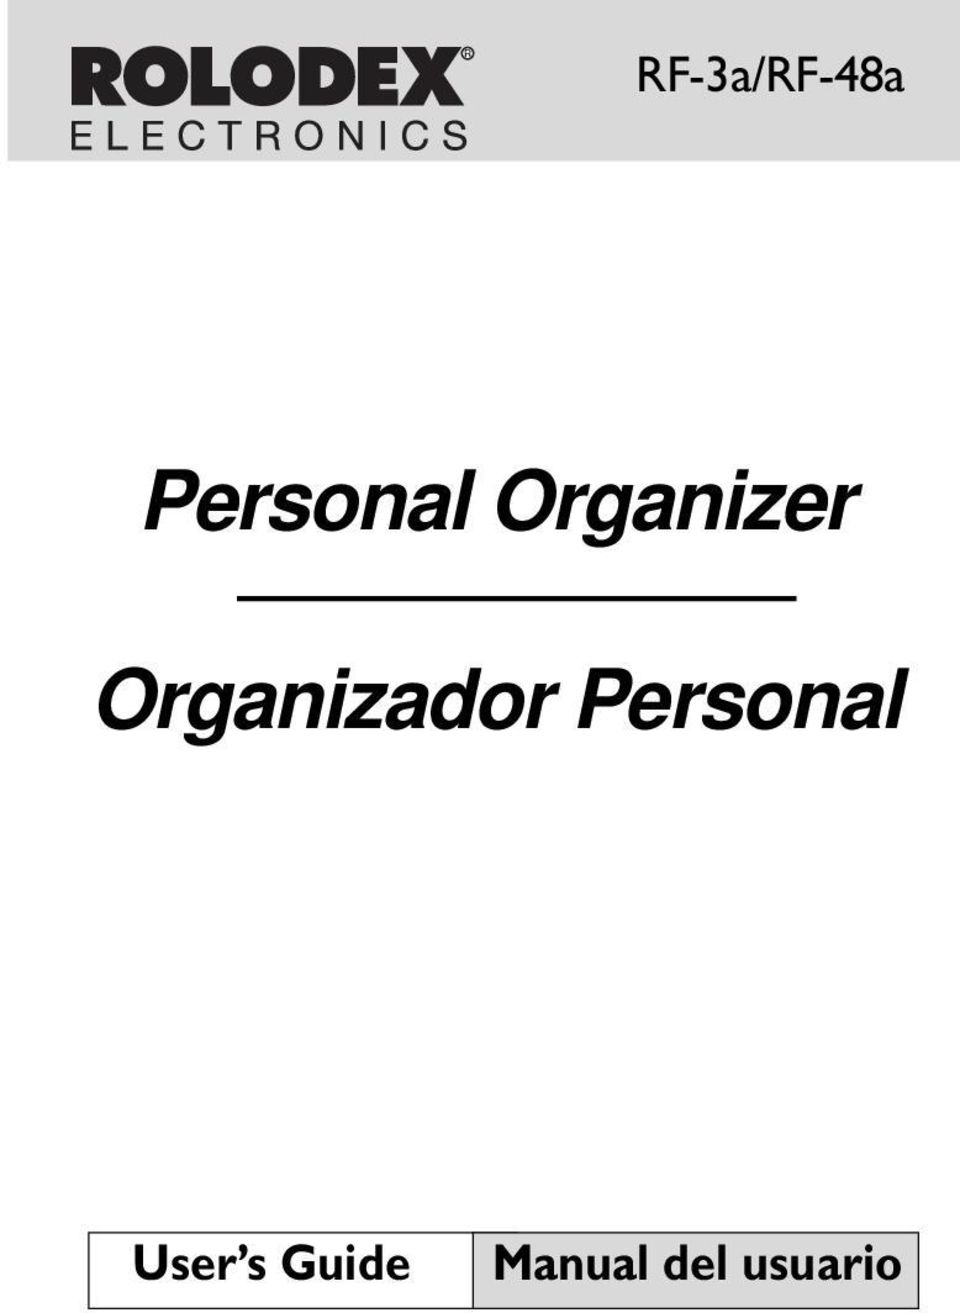 Organizador Personal